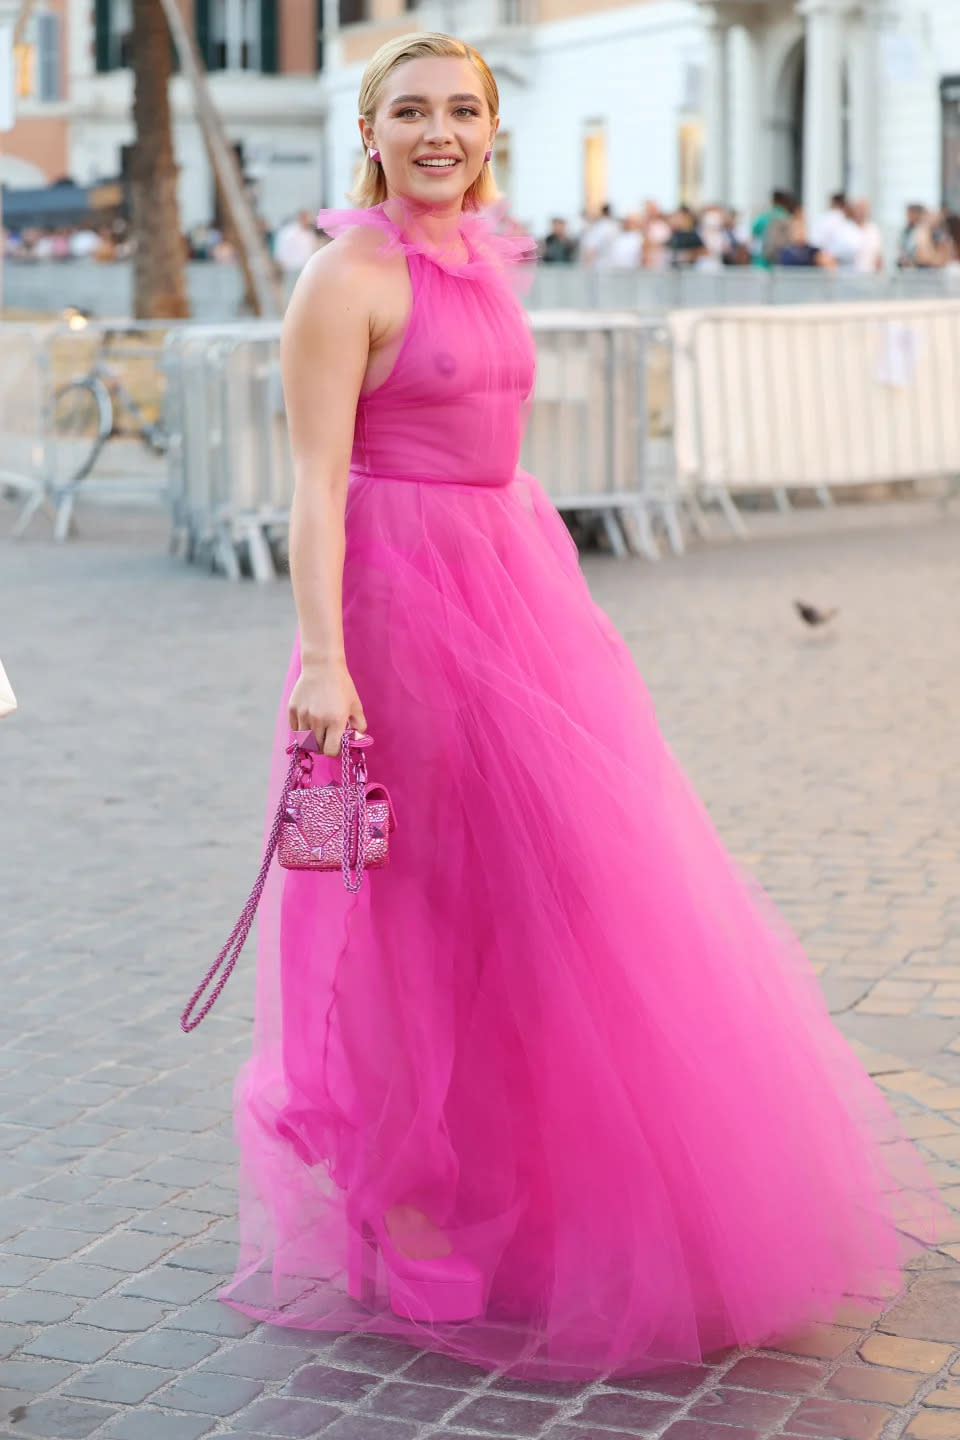 Ihr Valentino-Kleid, unter dem man ihre Brüste sehen konnte, löste im Juli viele Diskussionen aus. (Bild: Getty Images)